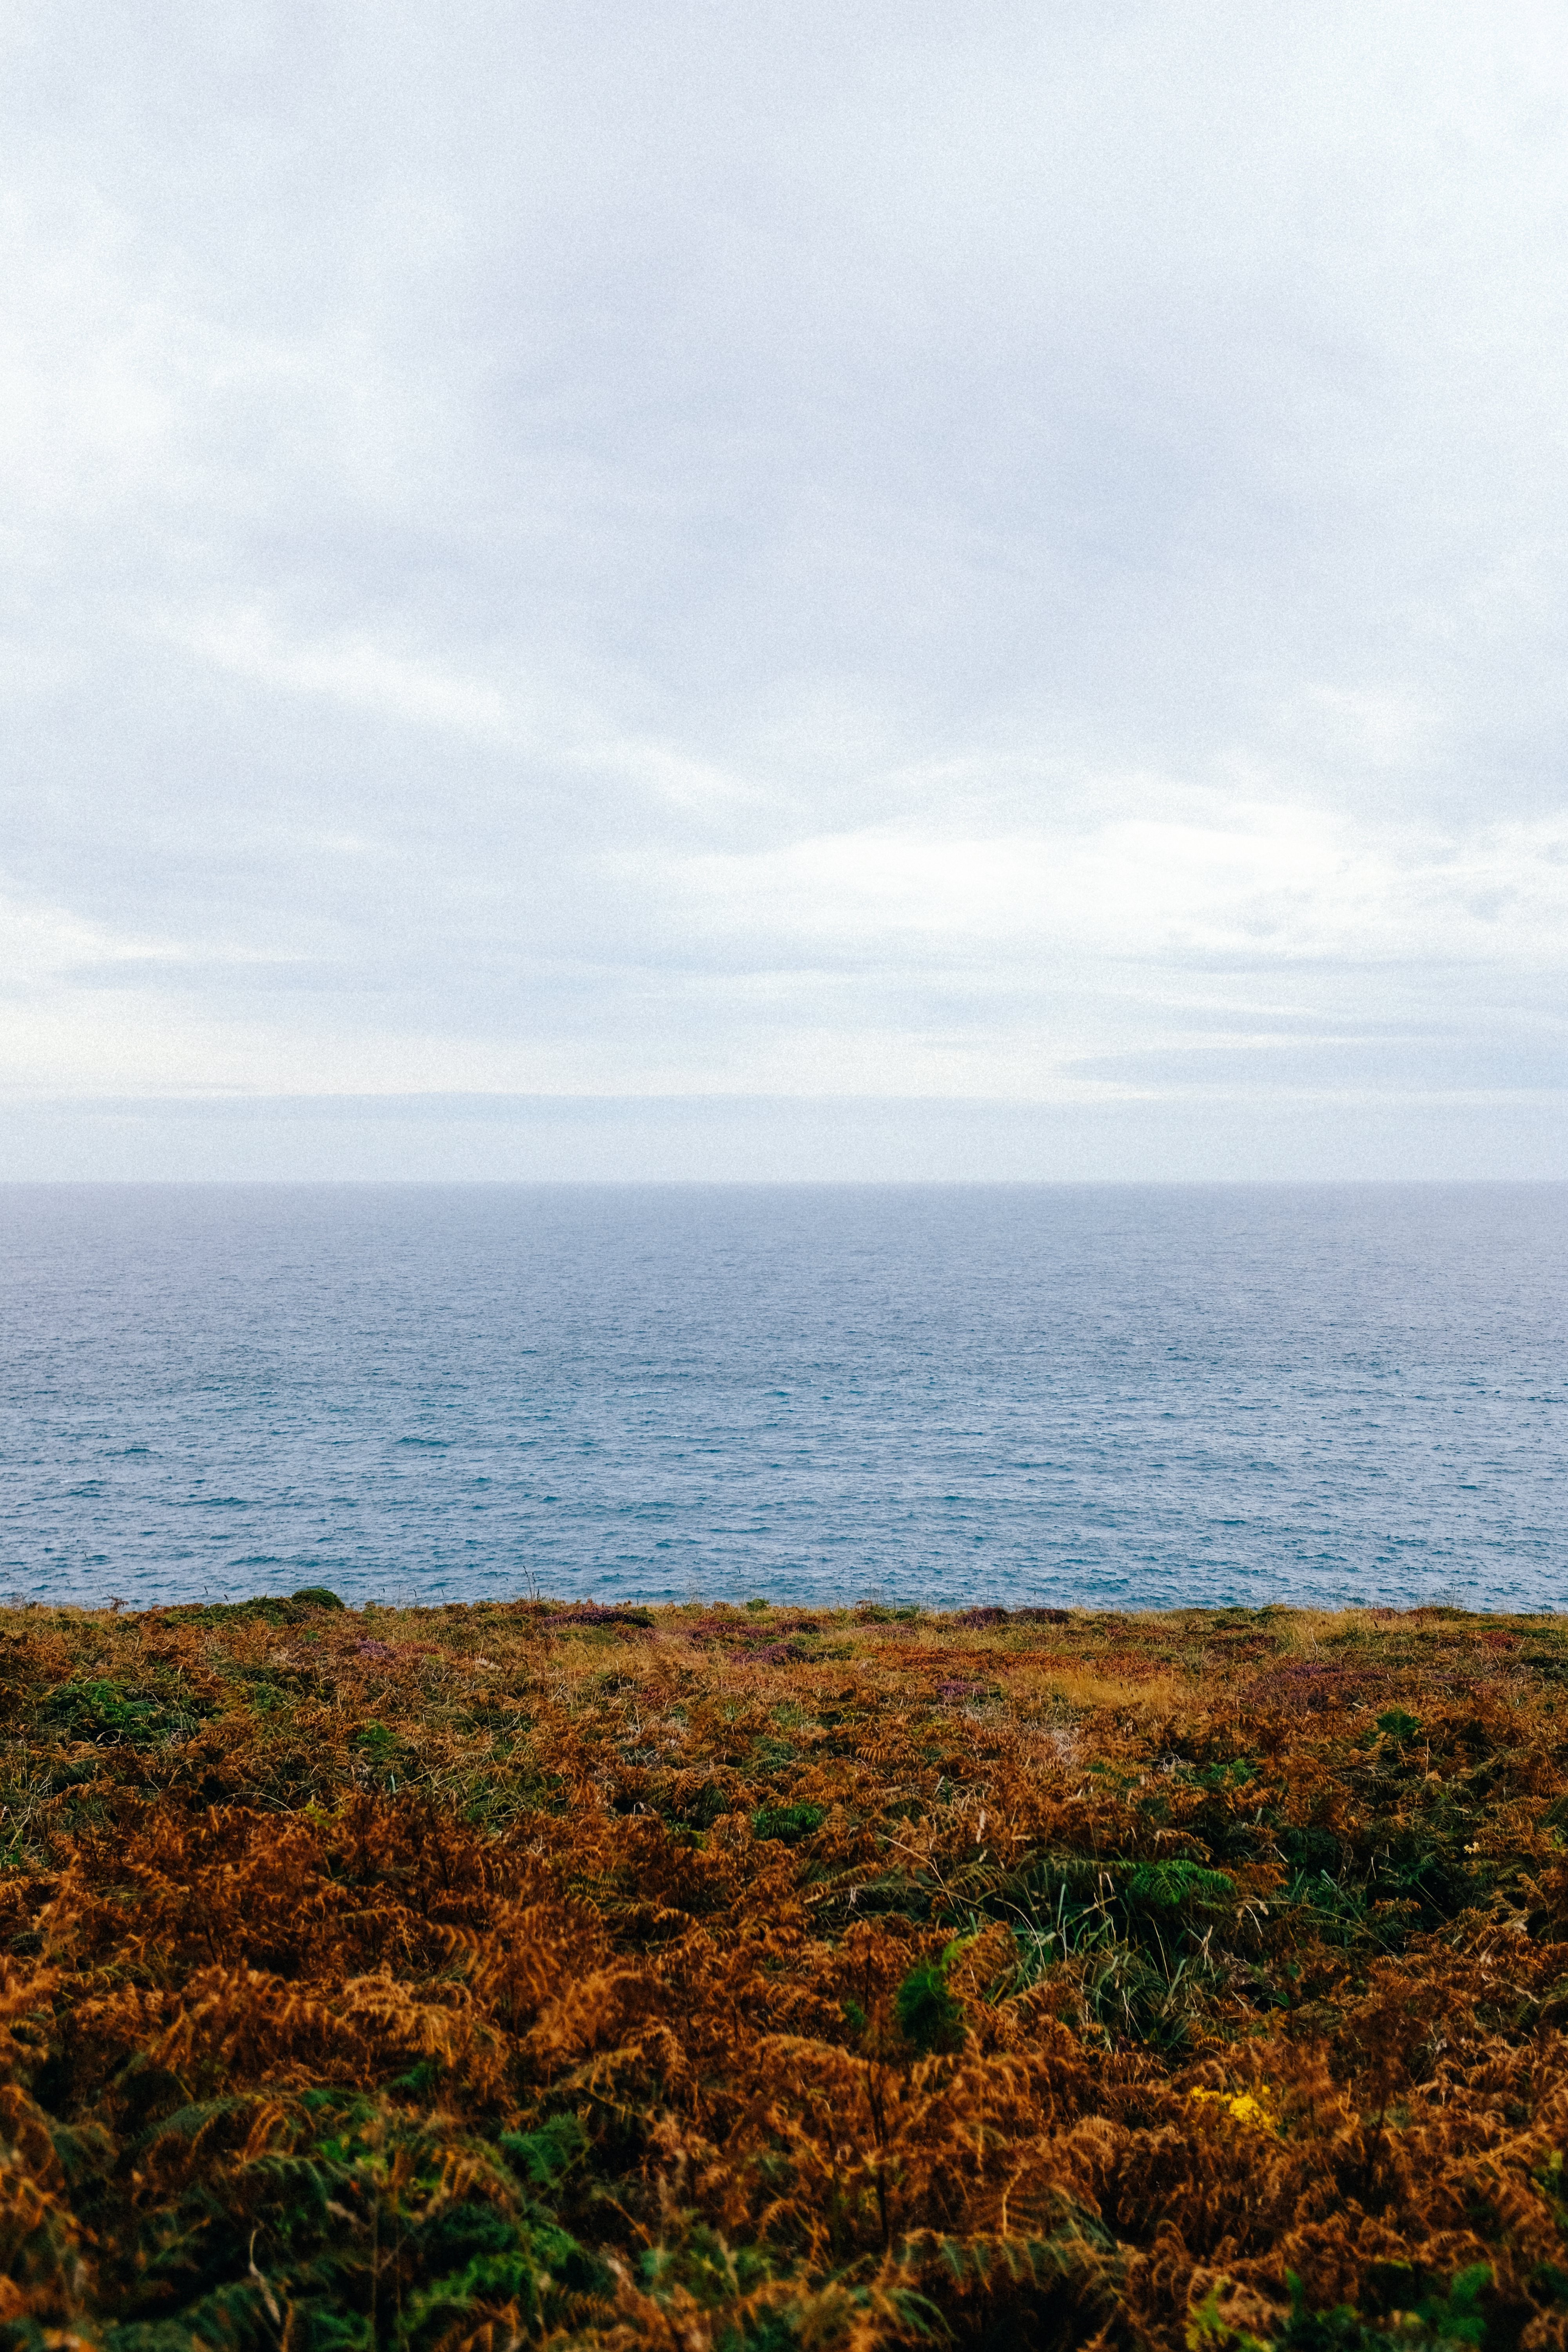 Paisaje del océano de la foto de la costa verde y marrón 